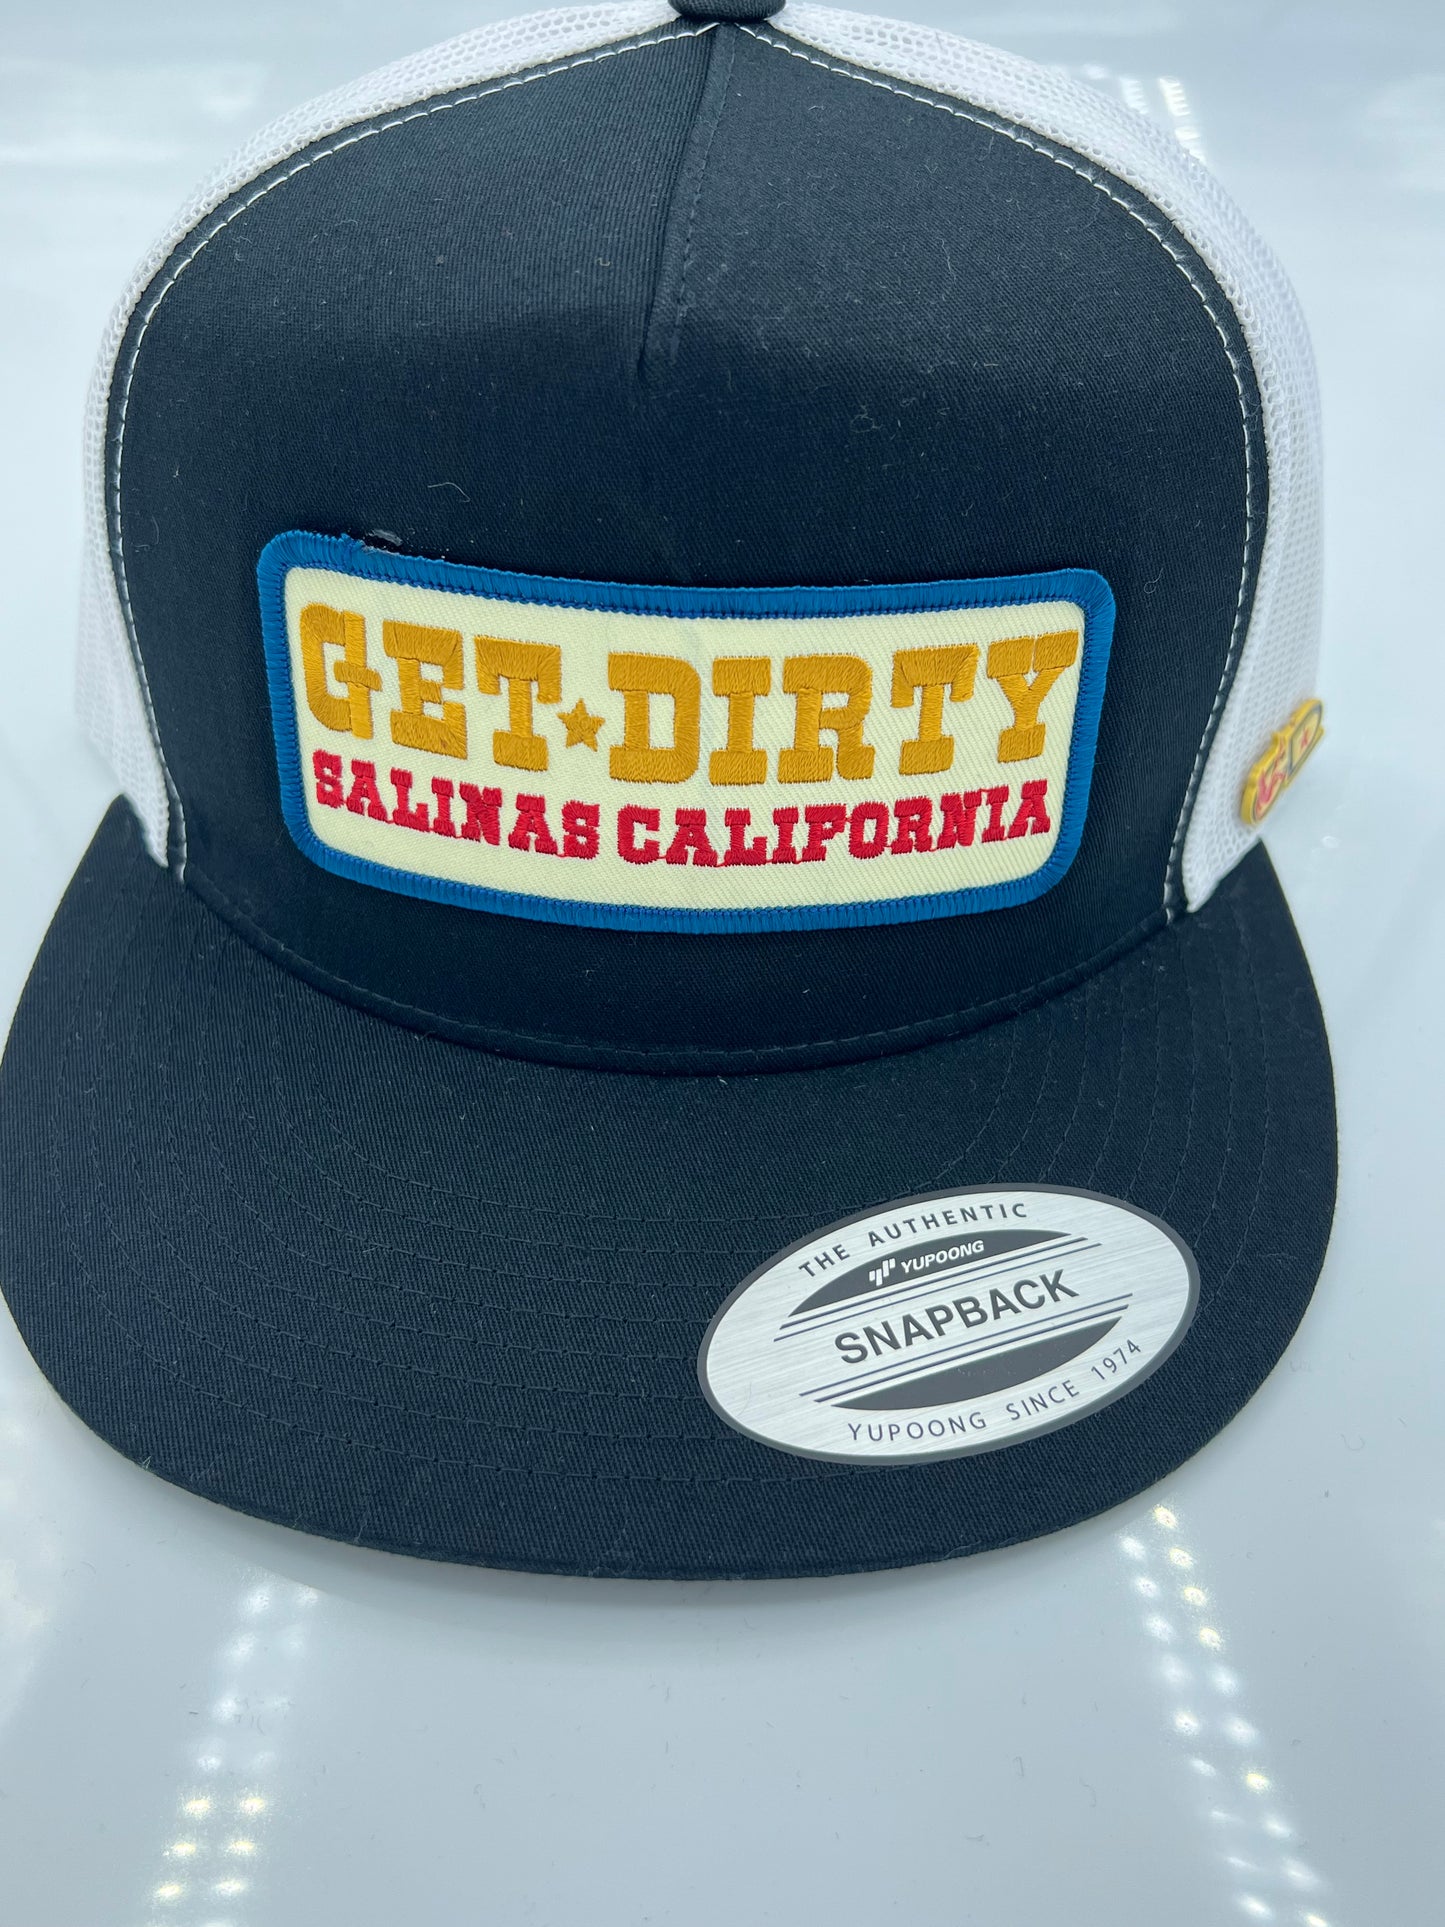 Get Dirty Merchandise IVORY Arabella Blk/Wht Trucker Hat